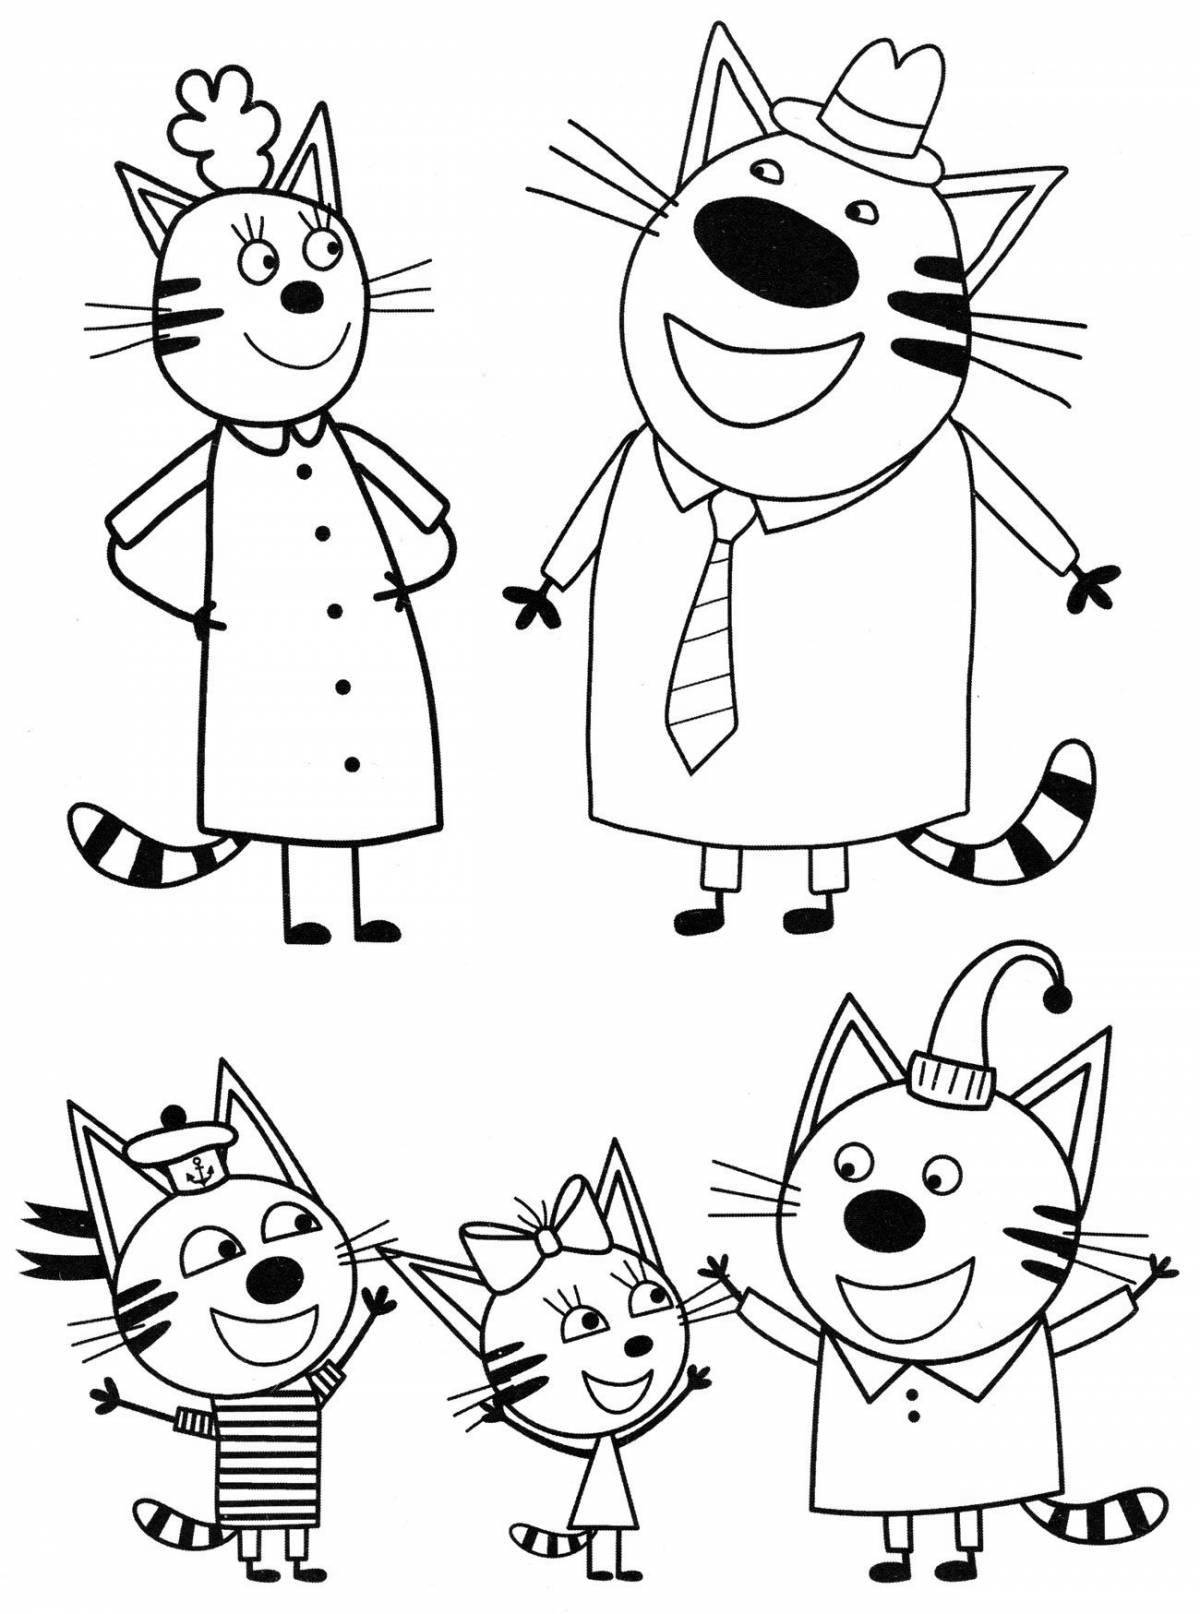 Coloring three shining cats